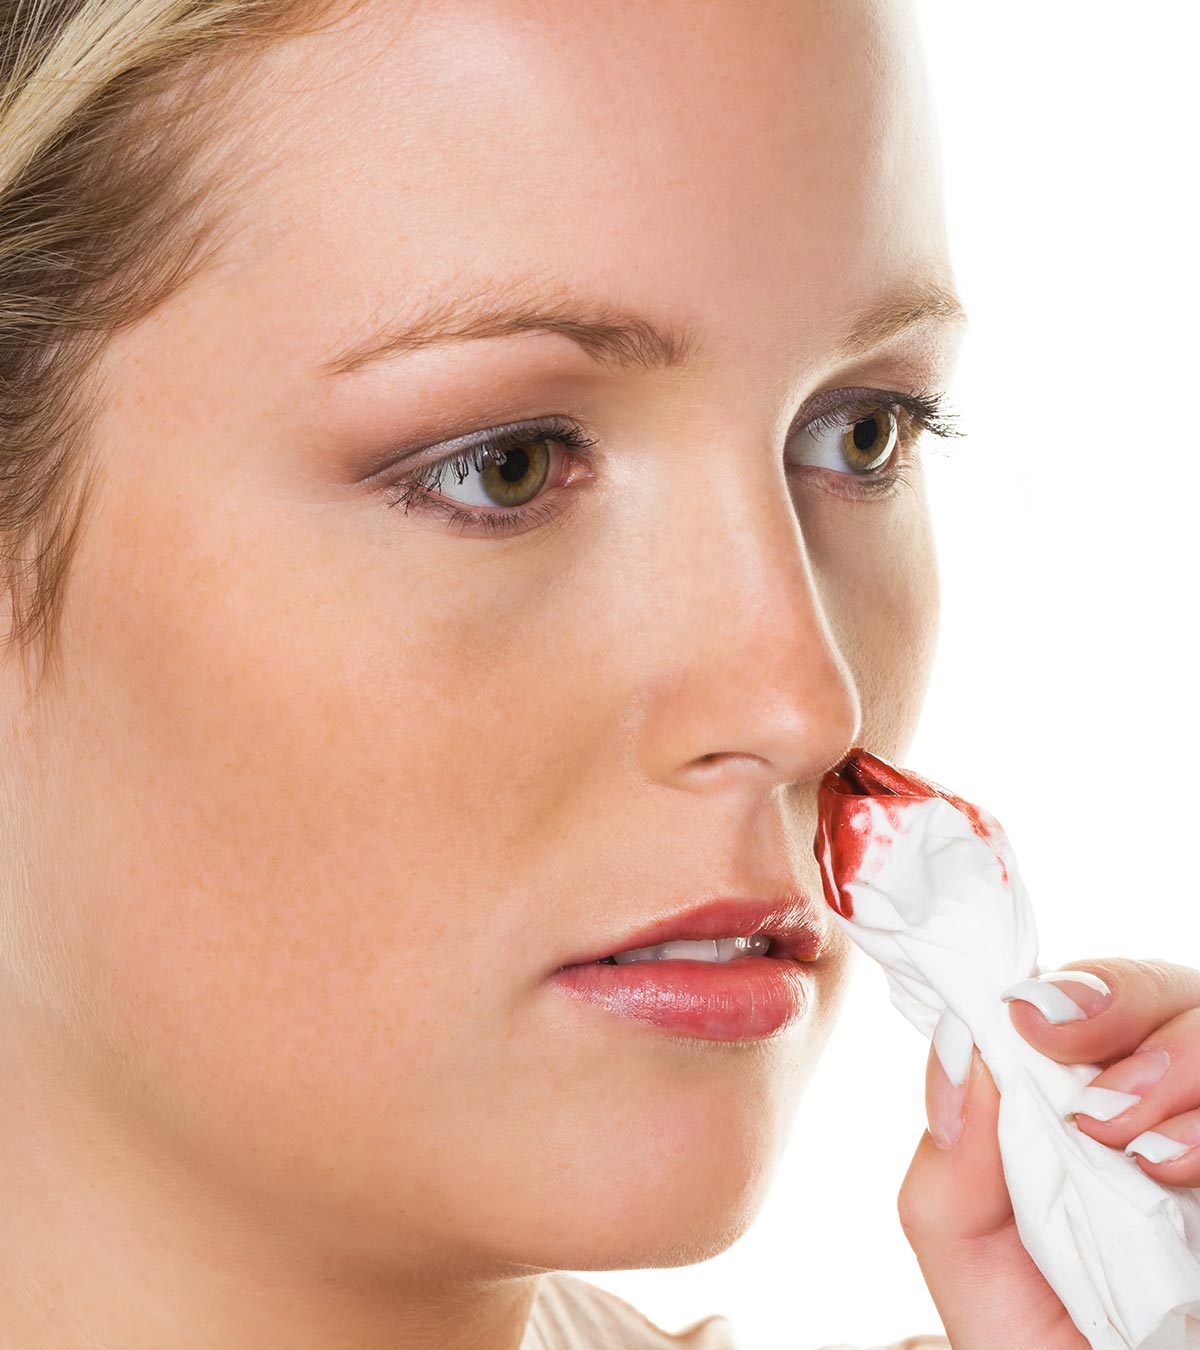 青少年流鼻血:原因、治疗和何时去看医生